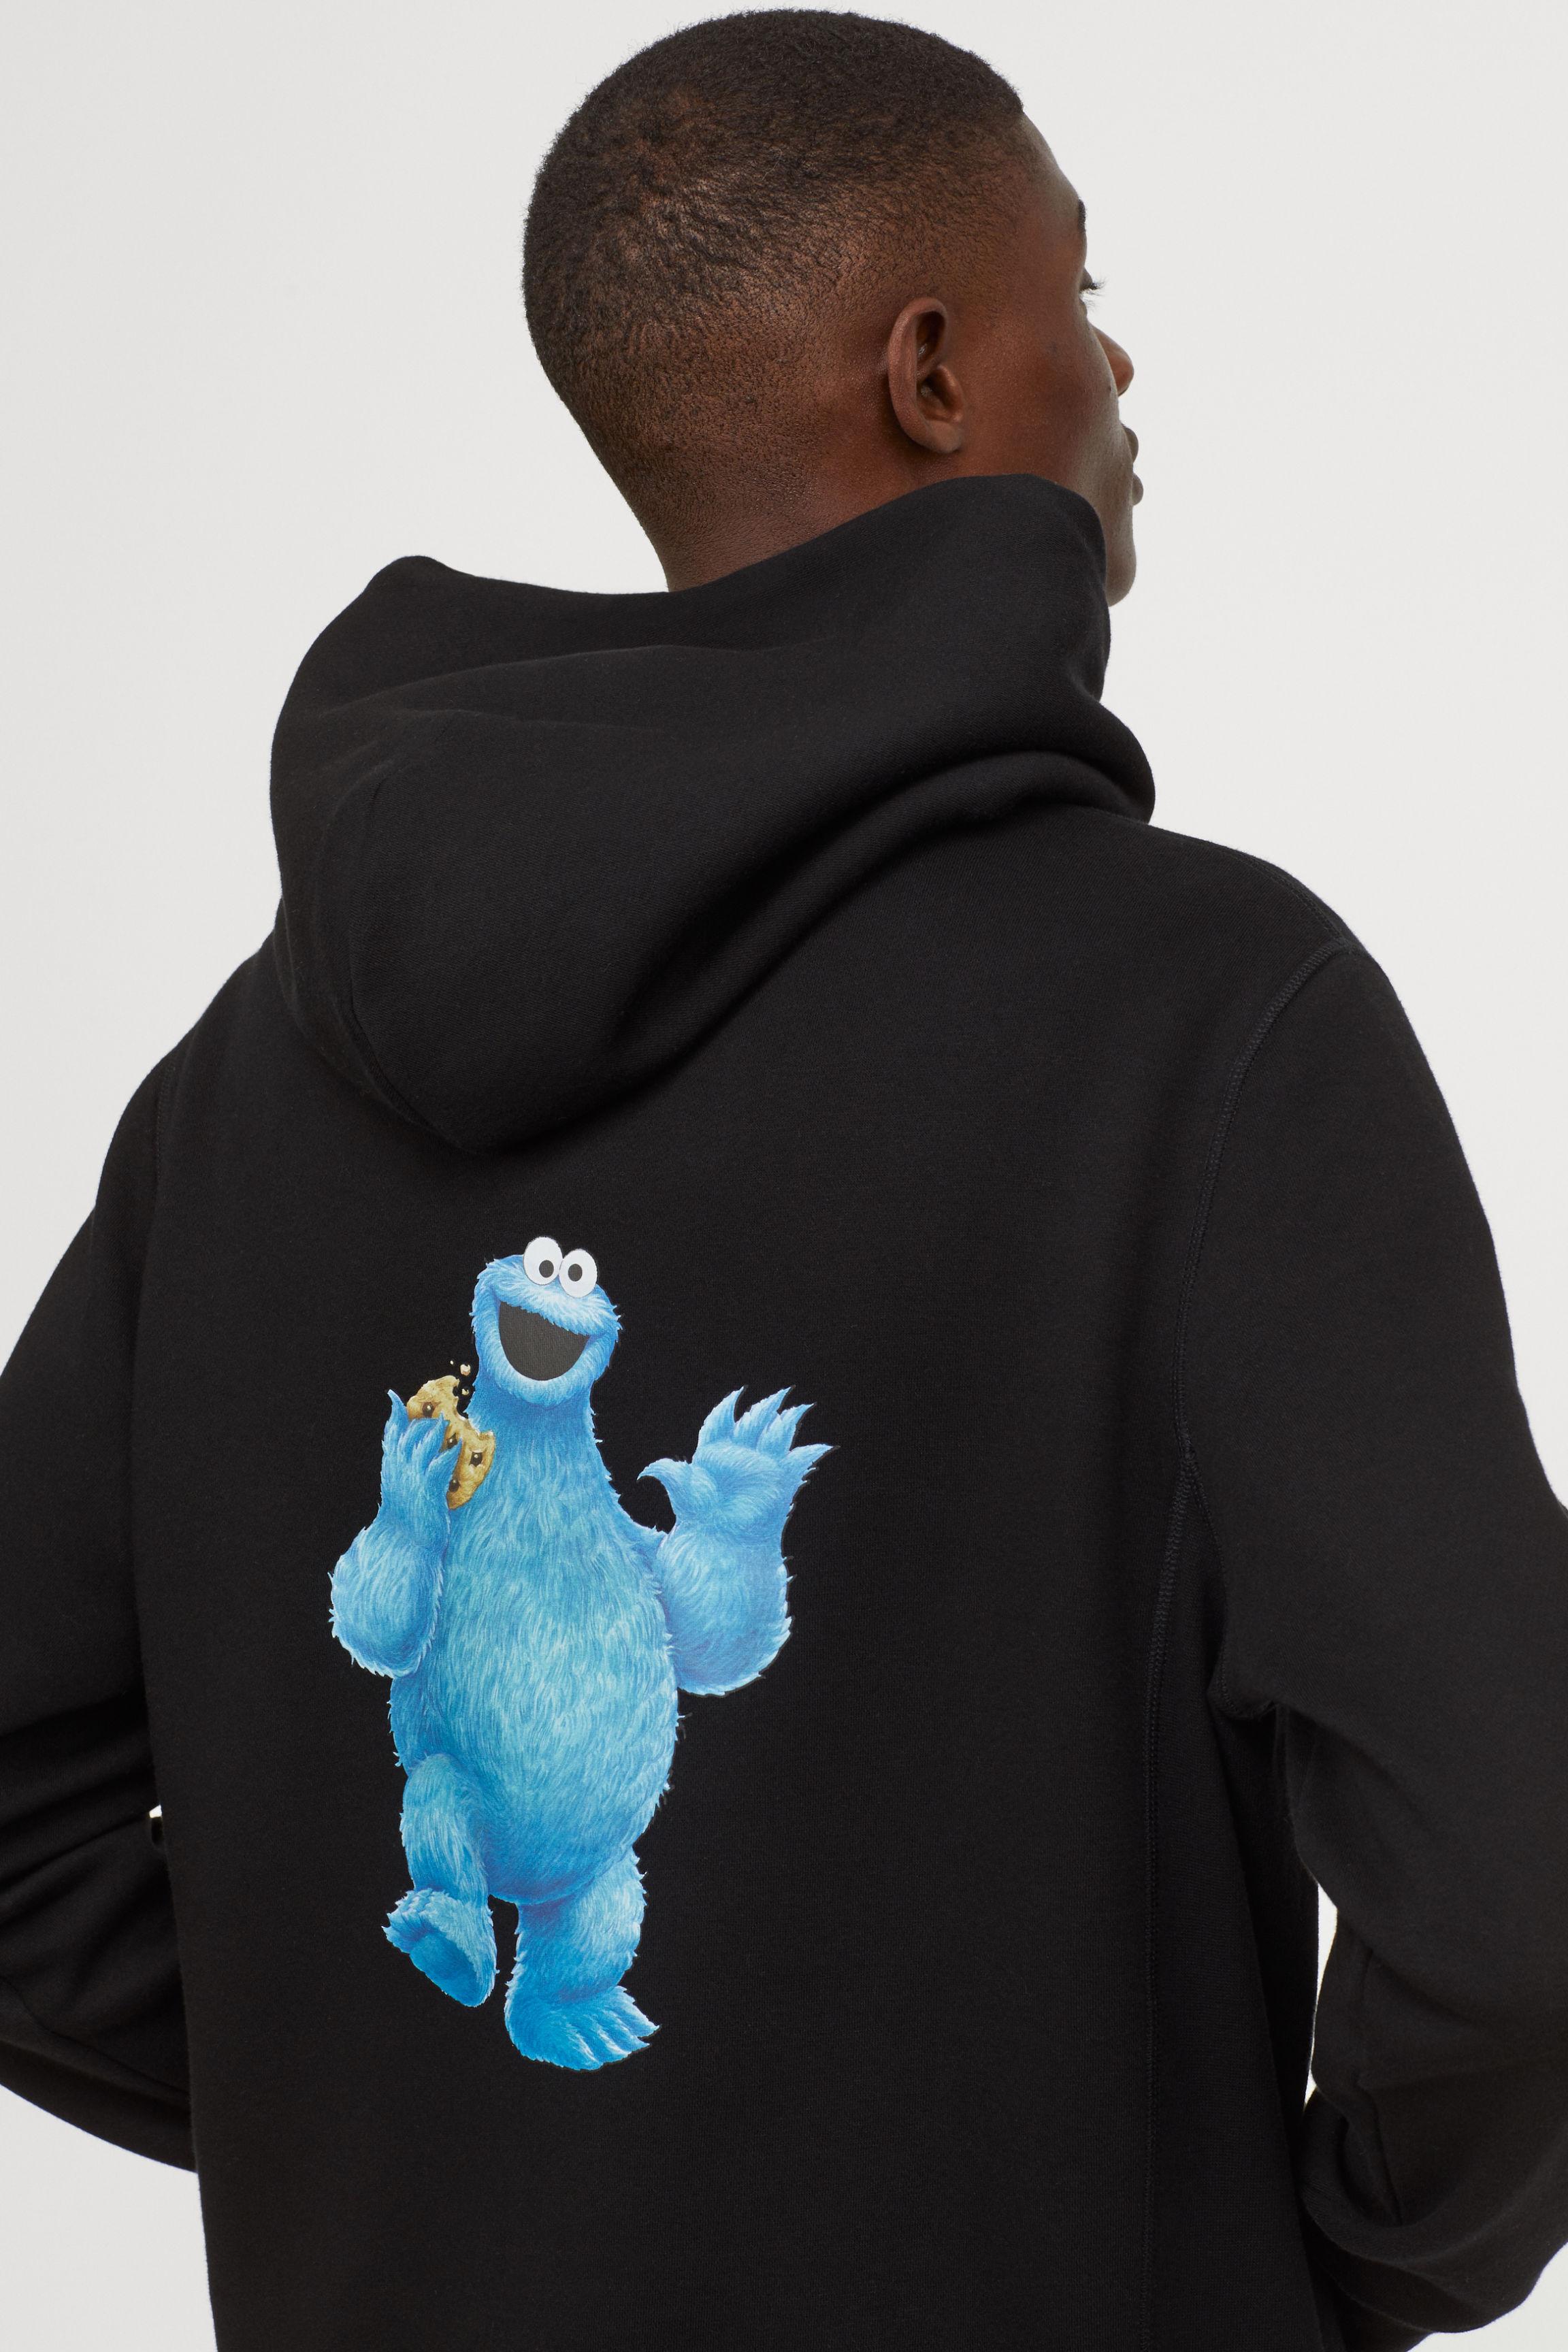 Cookie Monster Hoodie H&m Flash Sales, 53% OFF | ilikepinga.com